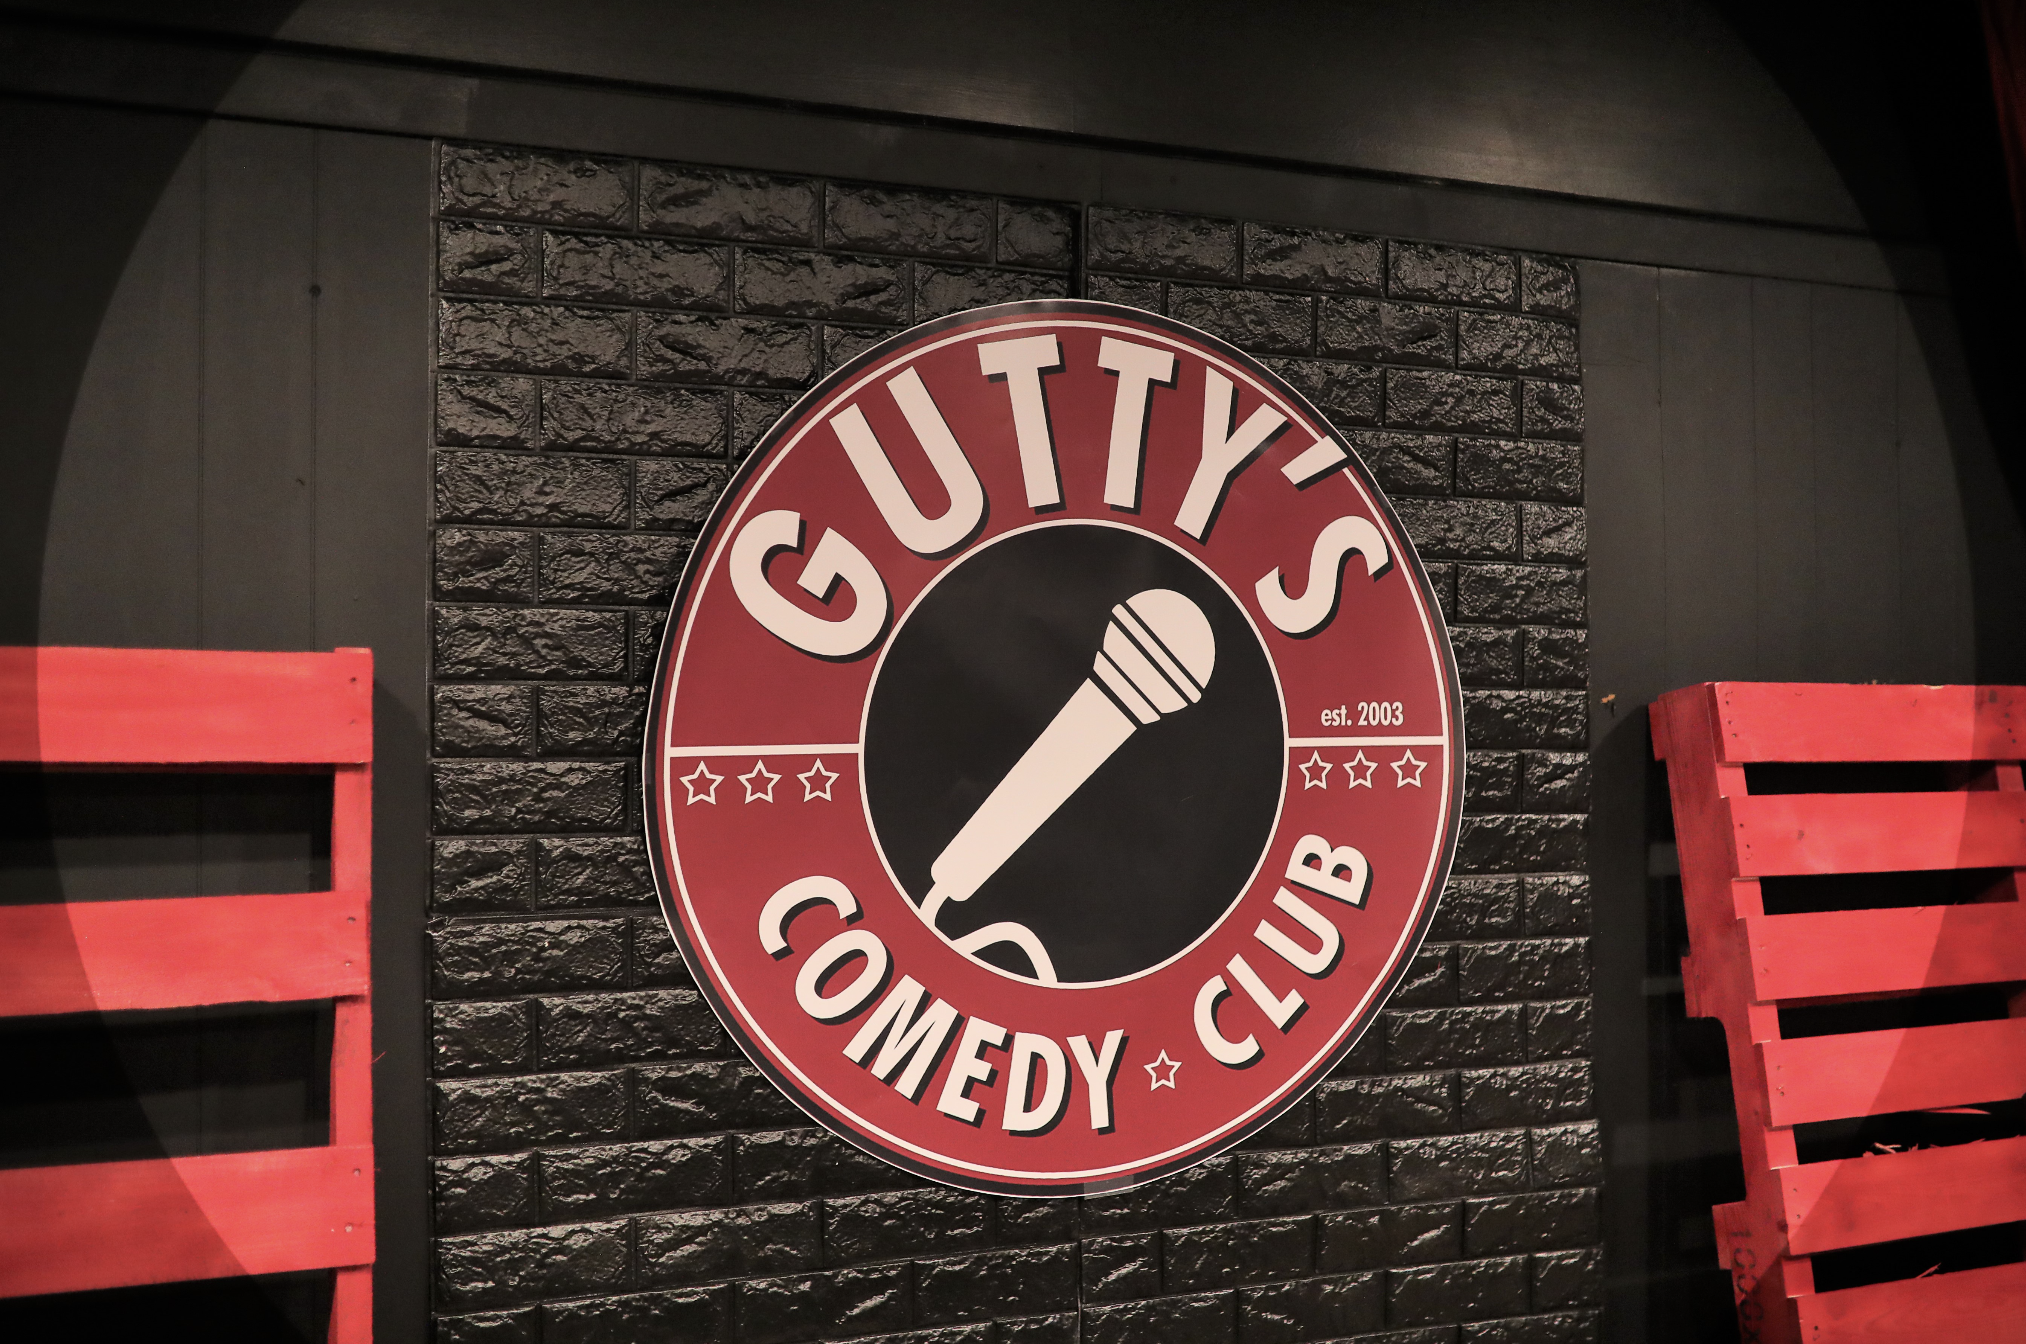 guttys comedy club